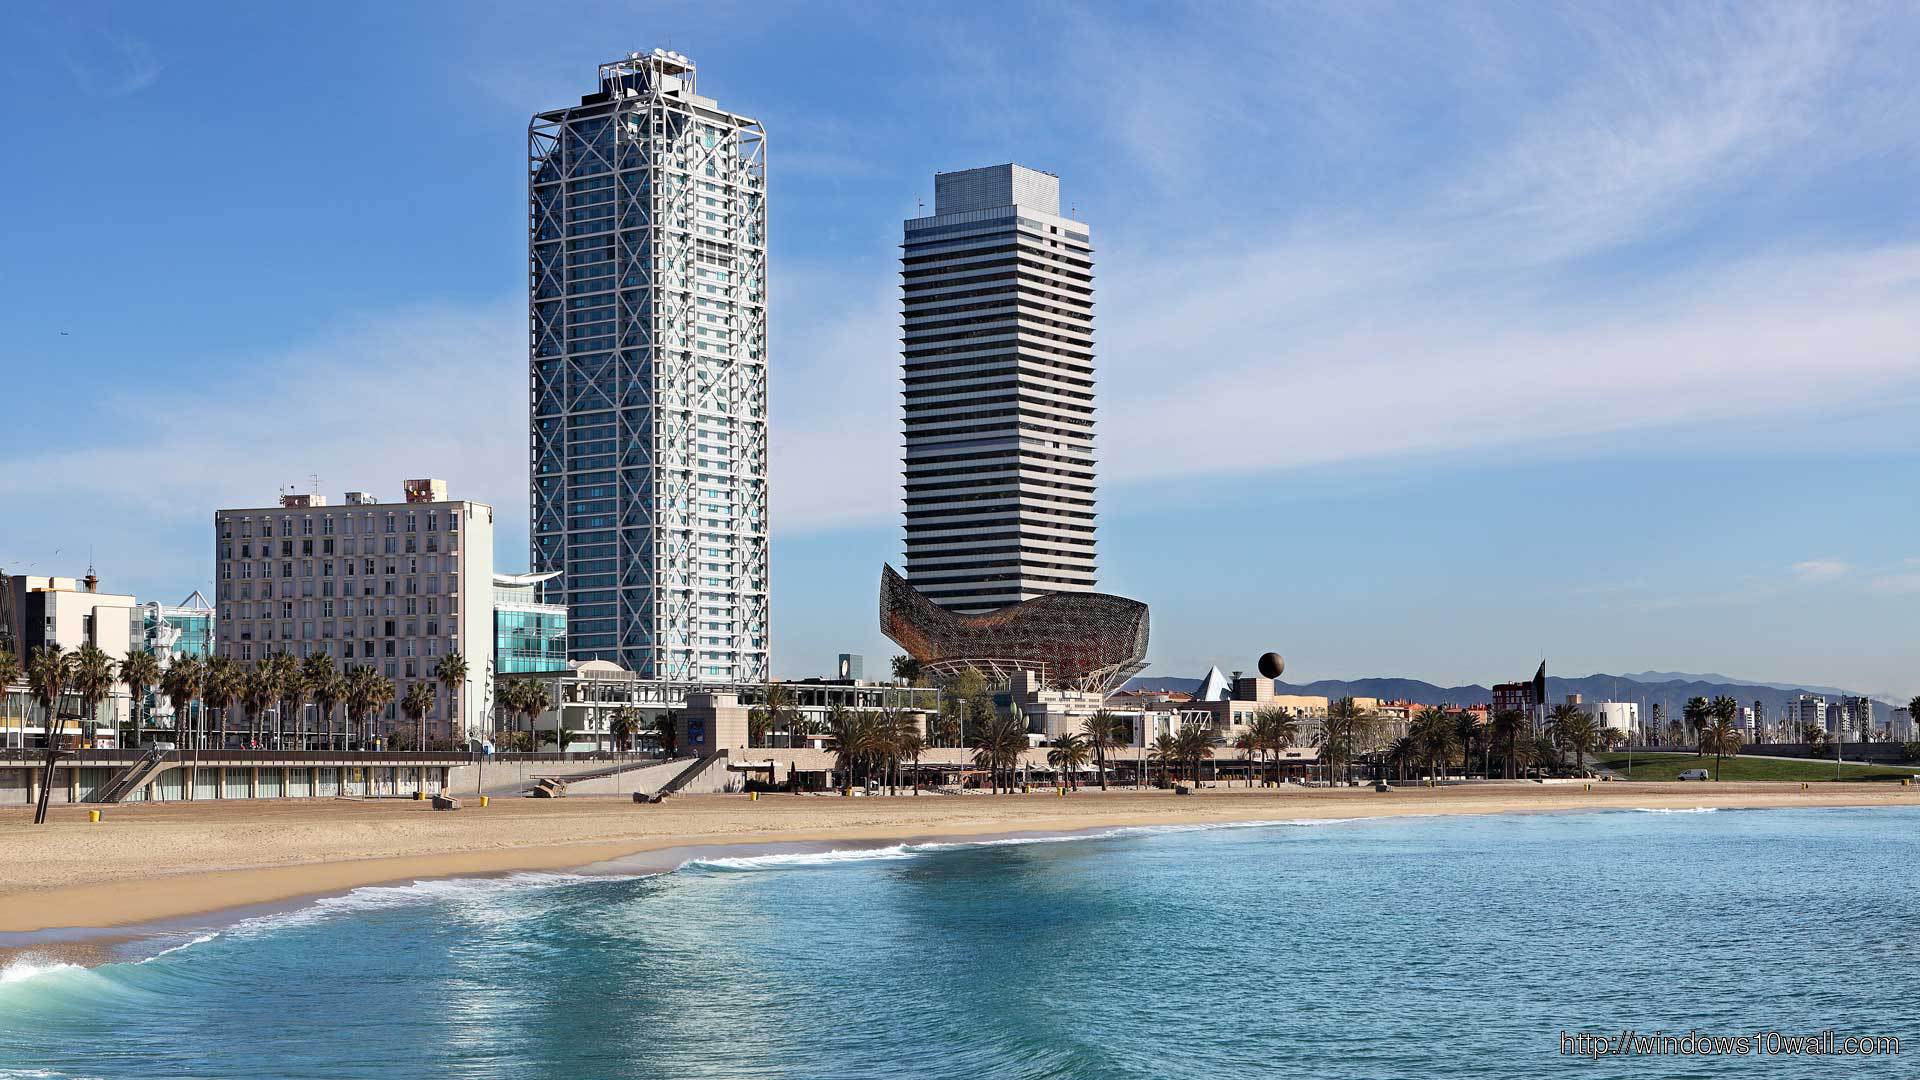 Barcelona Beach Hotels Travel Wallpaper